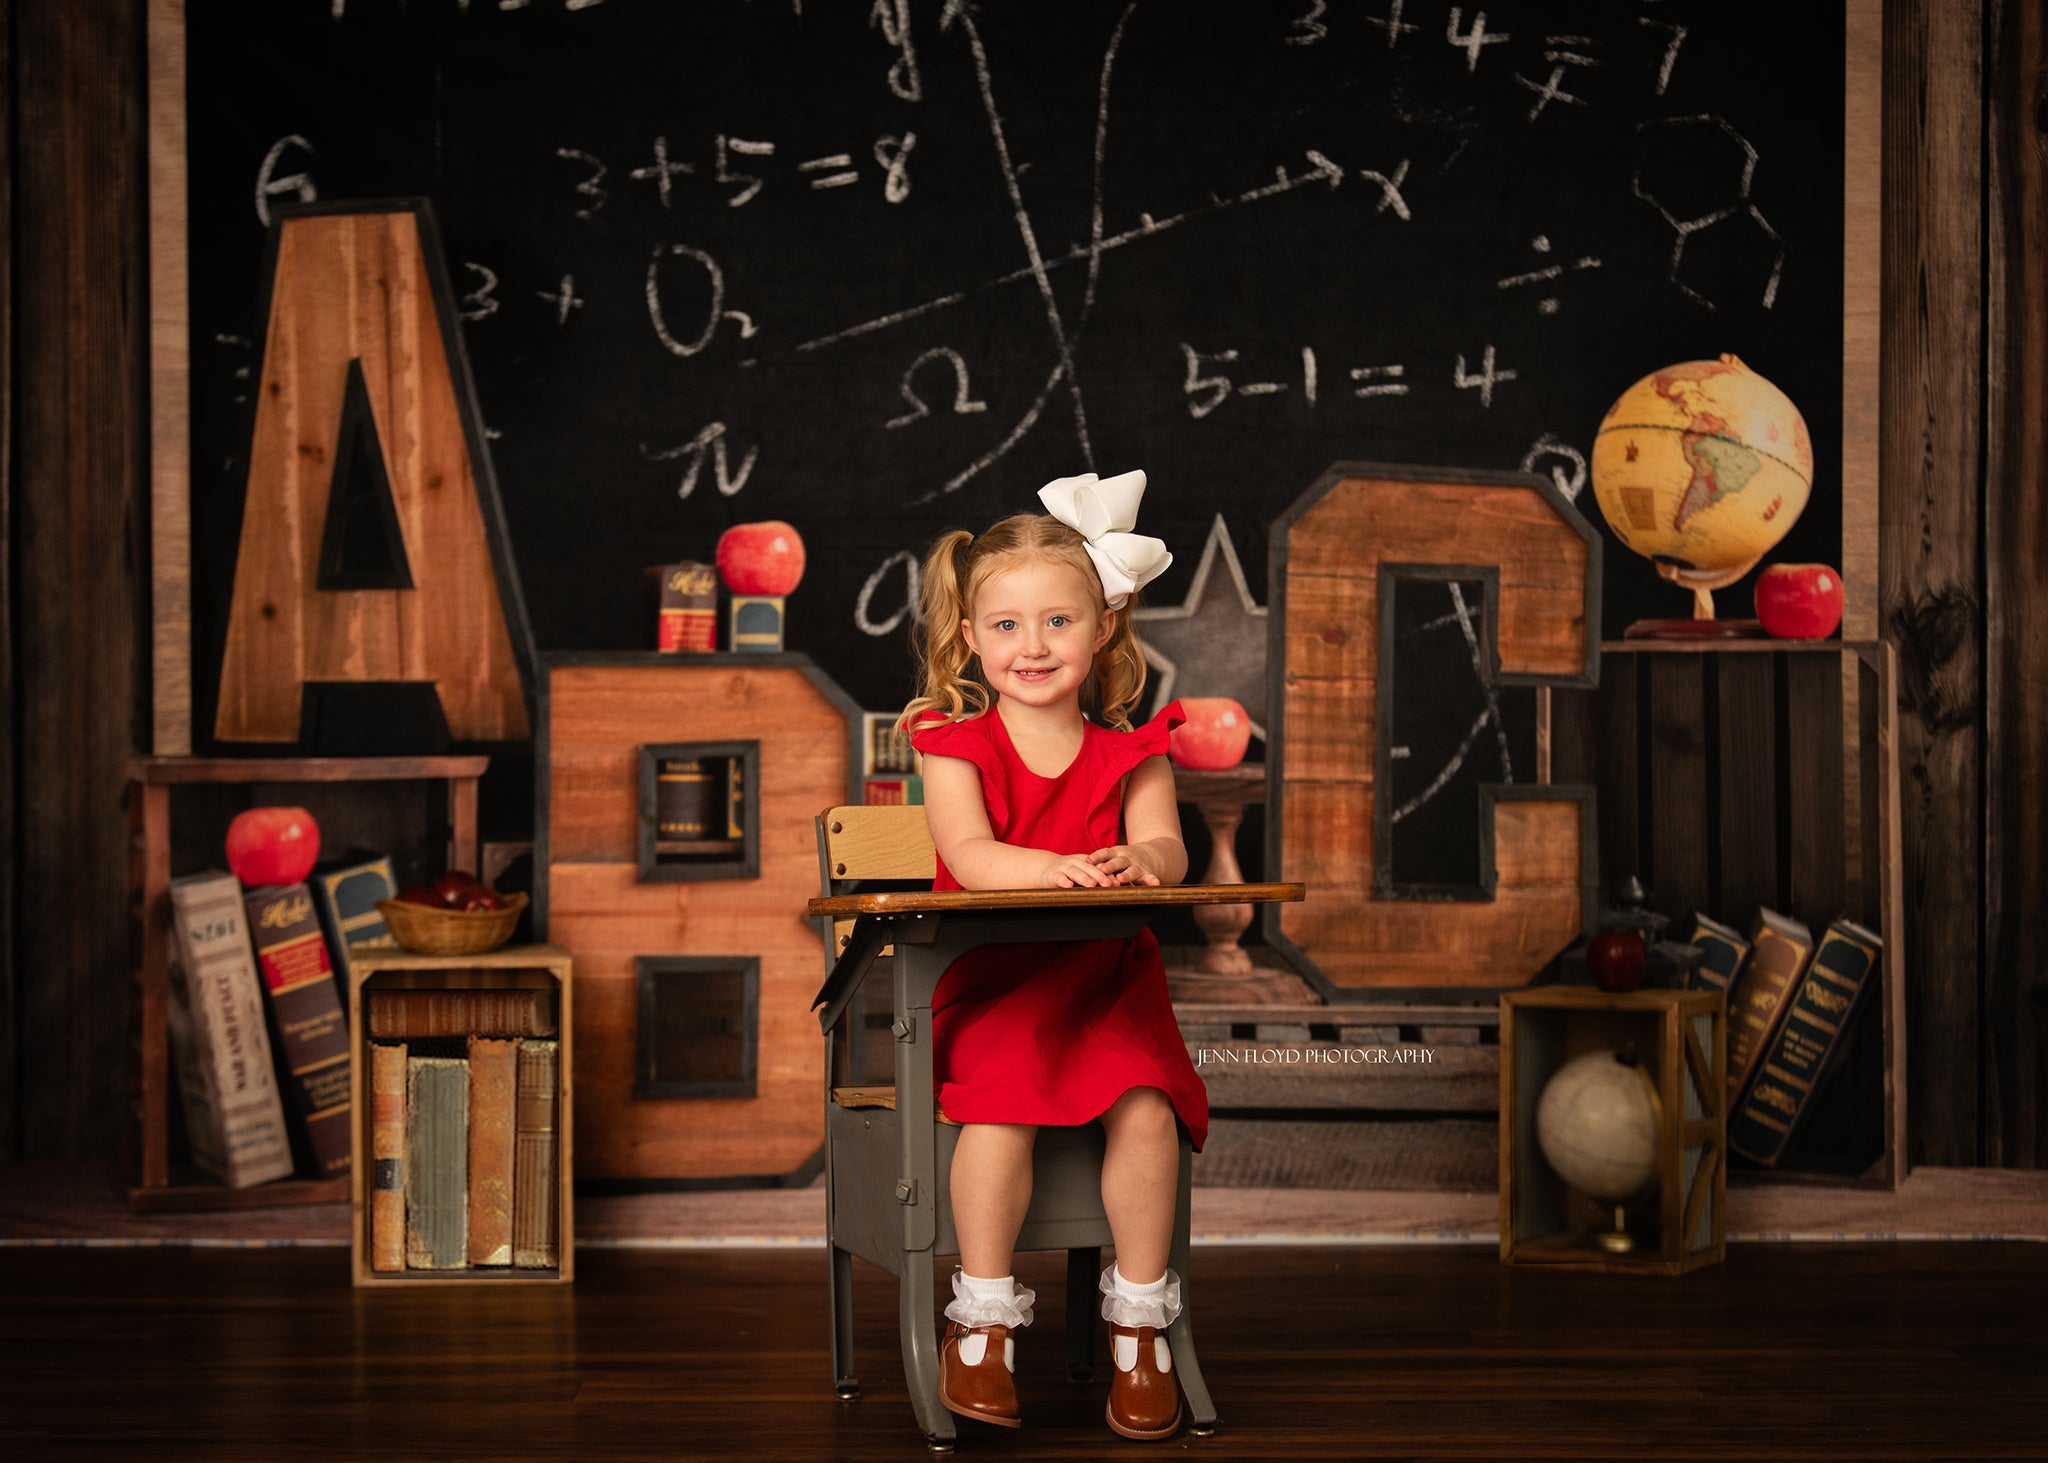 LONSALE Kate Back to School Blackboard Children Backdrop Designed by Emetselch